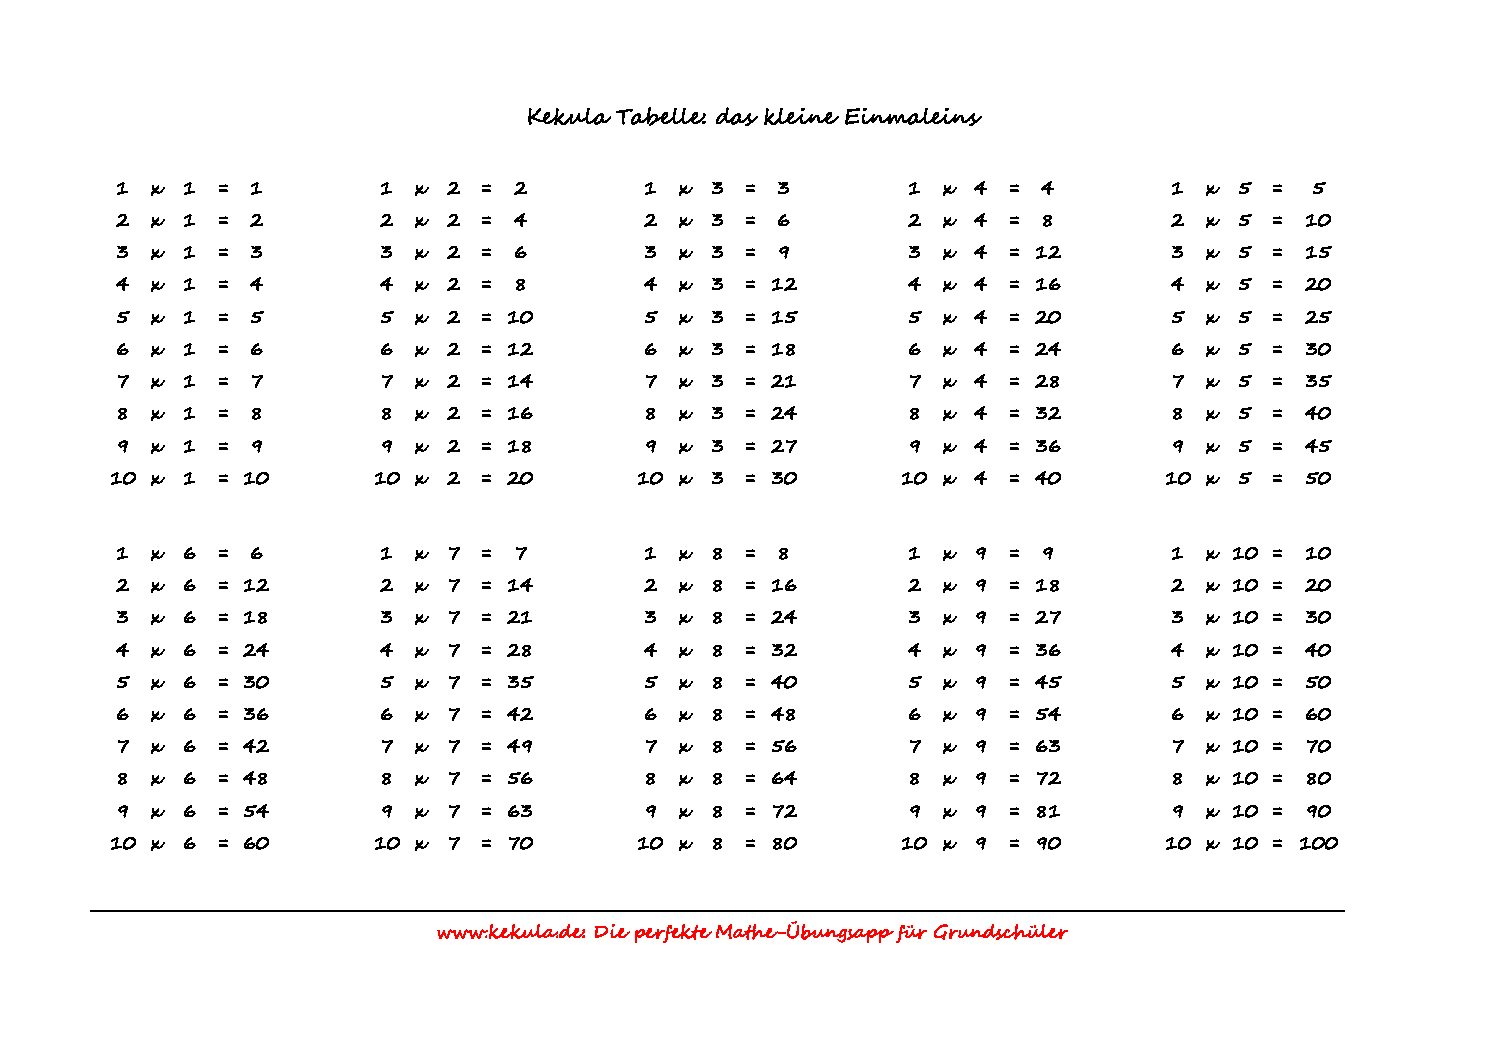 1x1TabelleV4 1 pdf - Lernkarte zum kleinen Einmaleins - Lernkarte zum kleinen Einmaleins